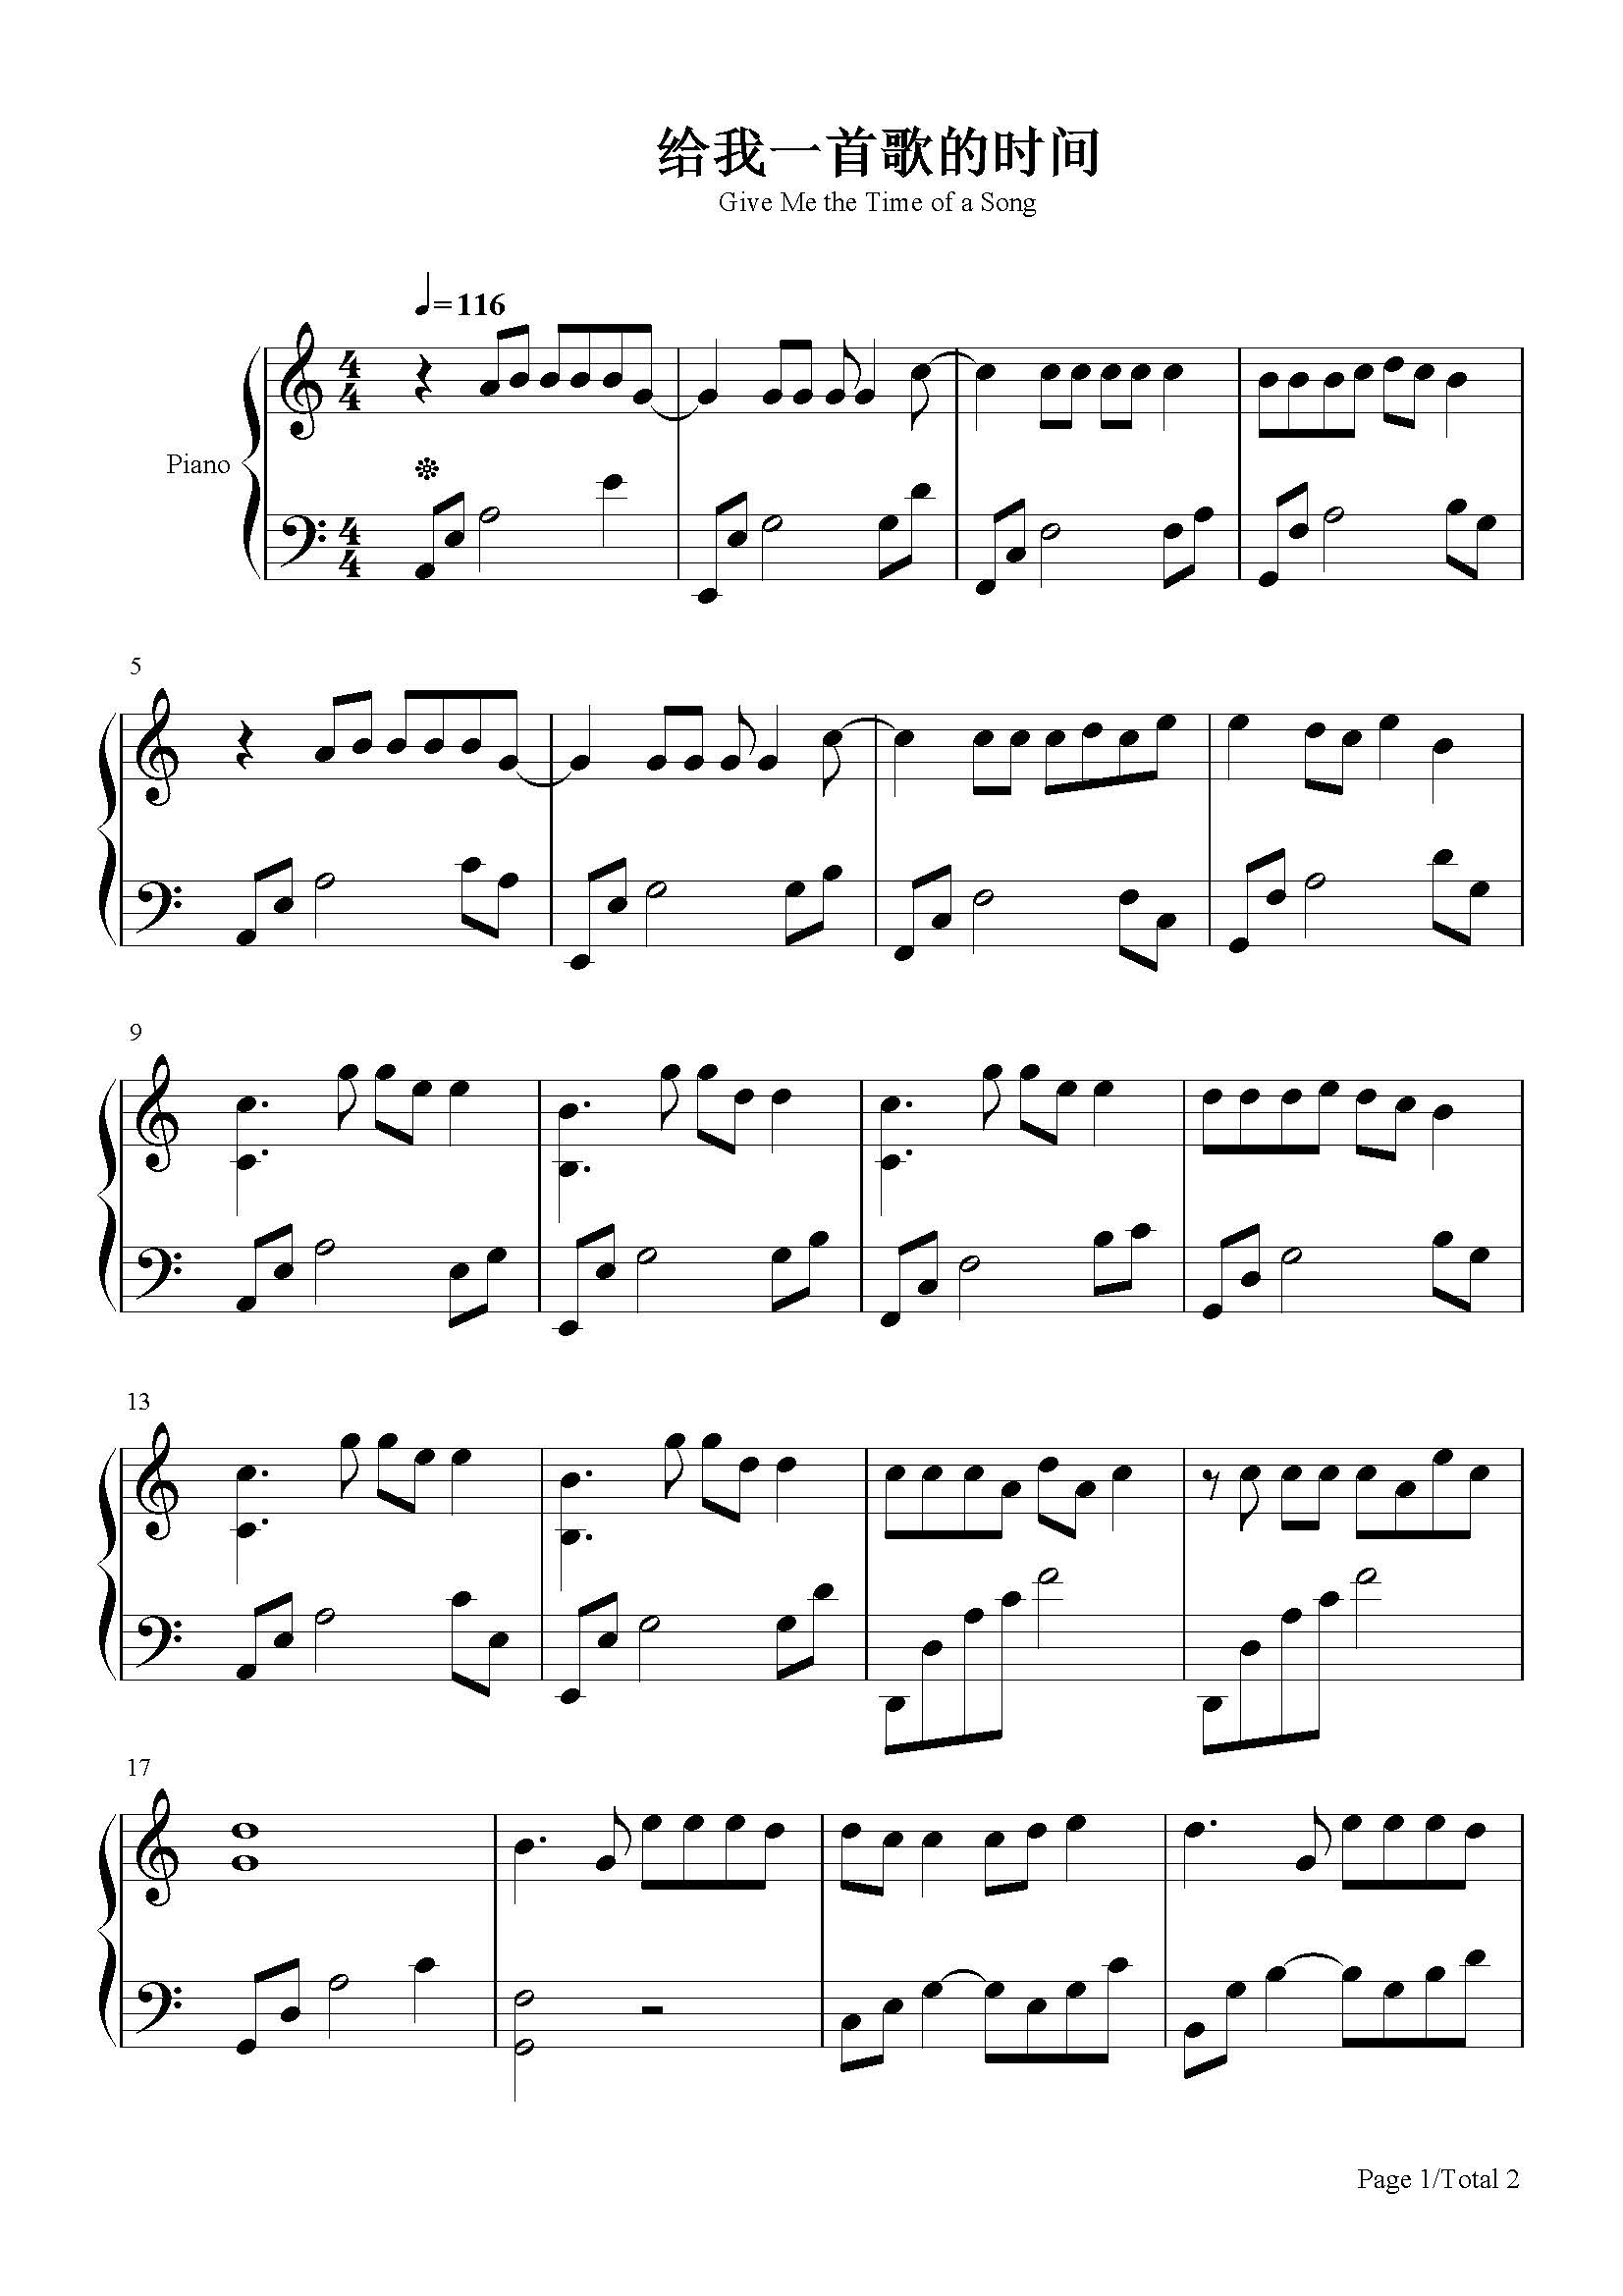 给我一首歌的时间-周杰伦-c调 -流行钢琴五线谱